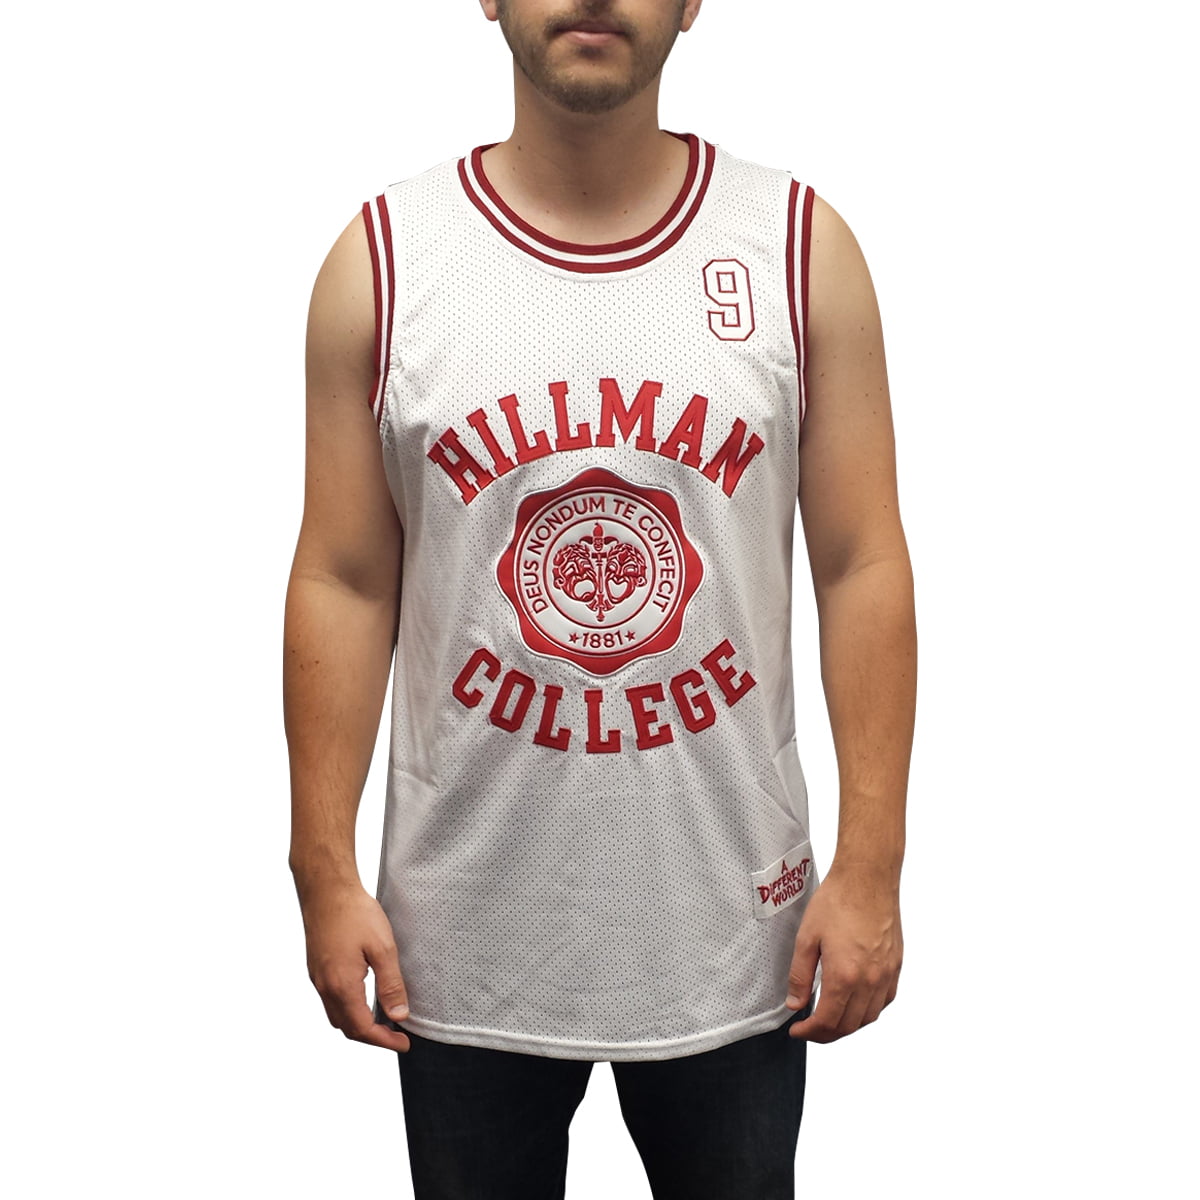 Dwayne Wayne 9 Hillman College Theater White Basketball Jersey A